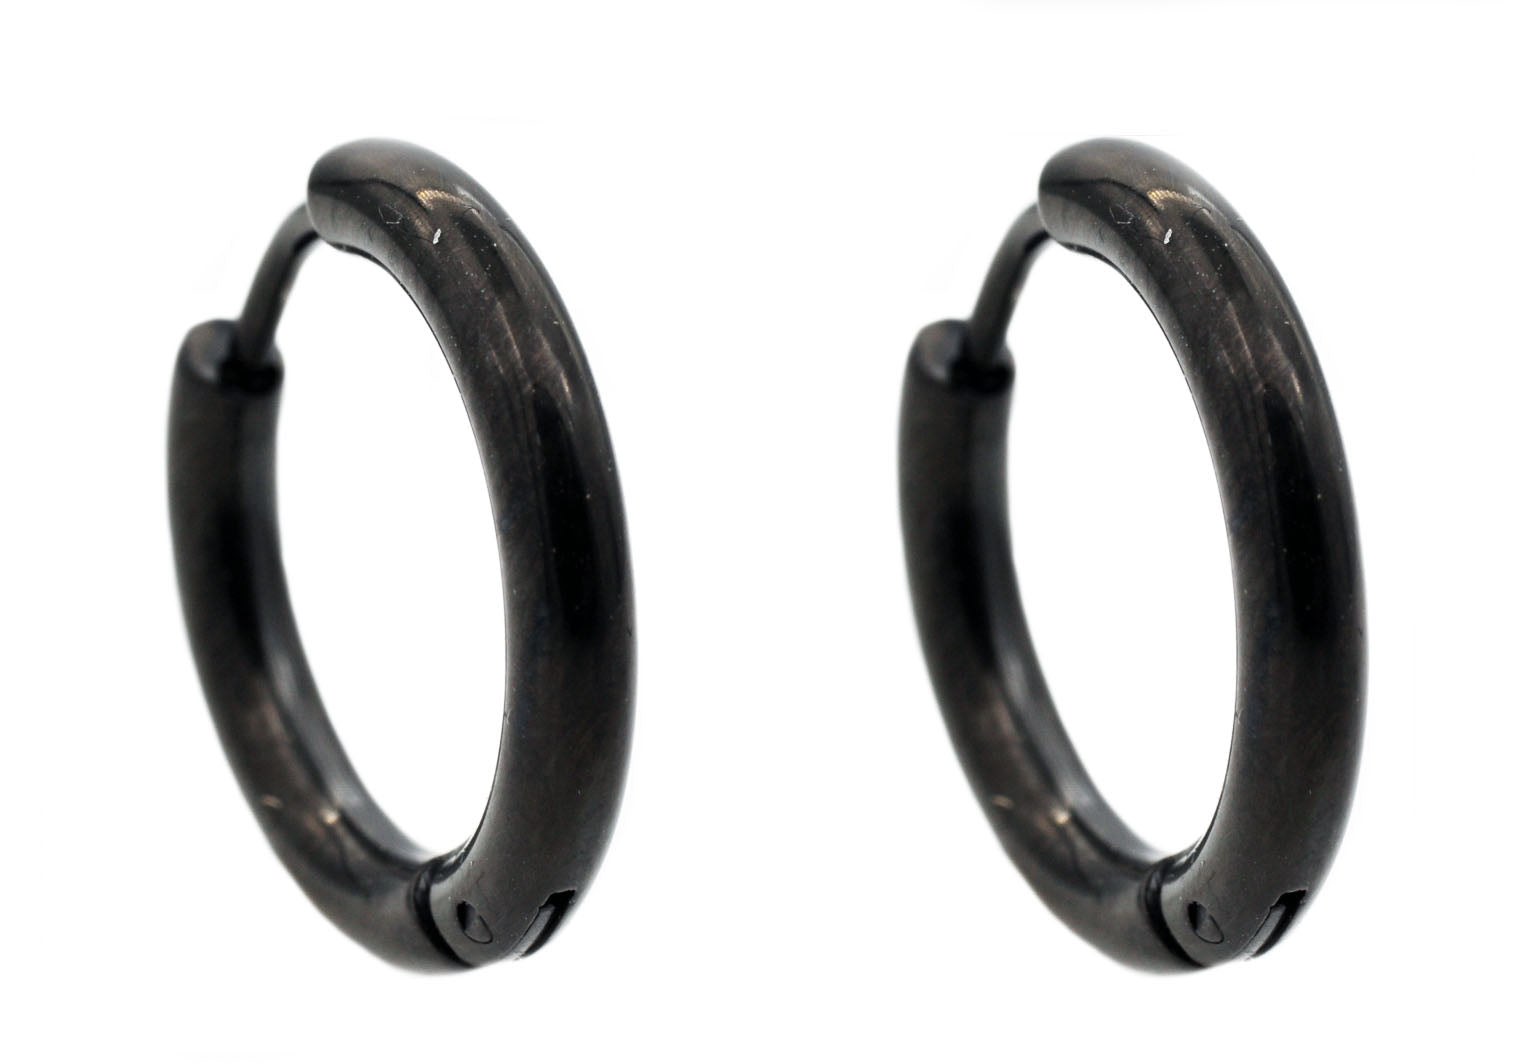 Mua Khuyên Tai Chanel Round Earrings Metal, High Quality Resin Metallic  Gold & Black Màu Đen Vàng - Chanel - Mua tại Vua Hàng Hiệu h069652